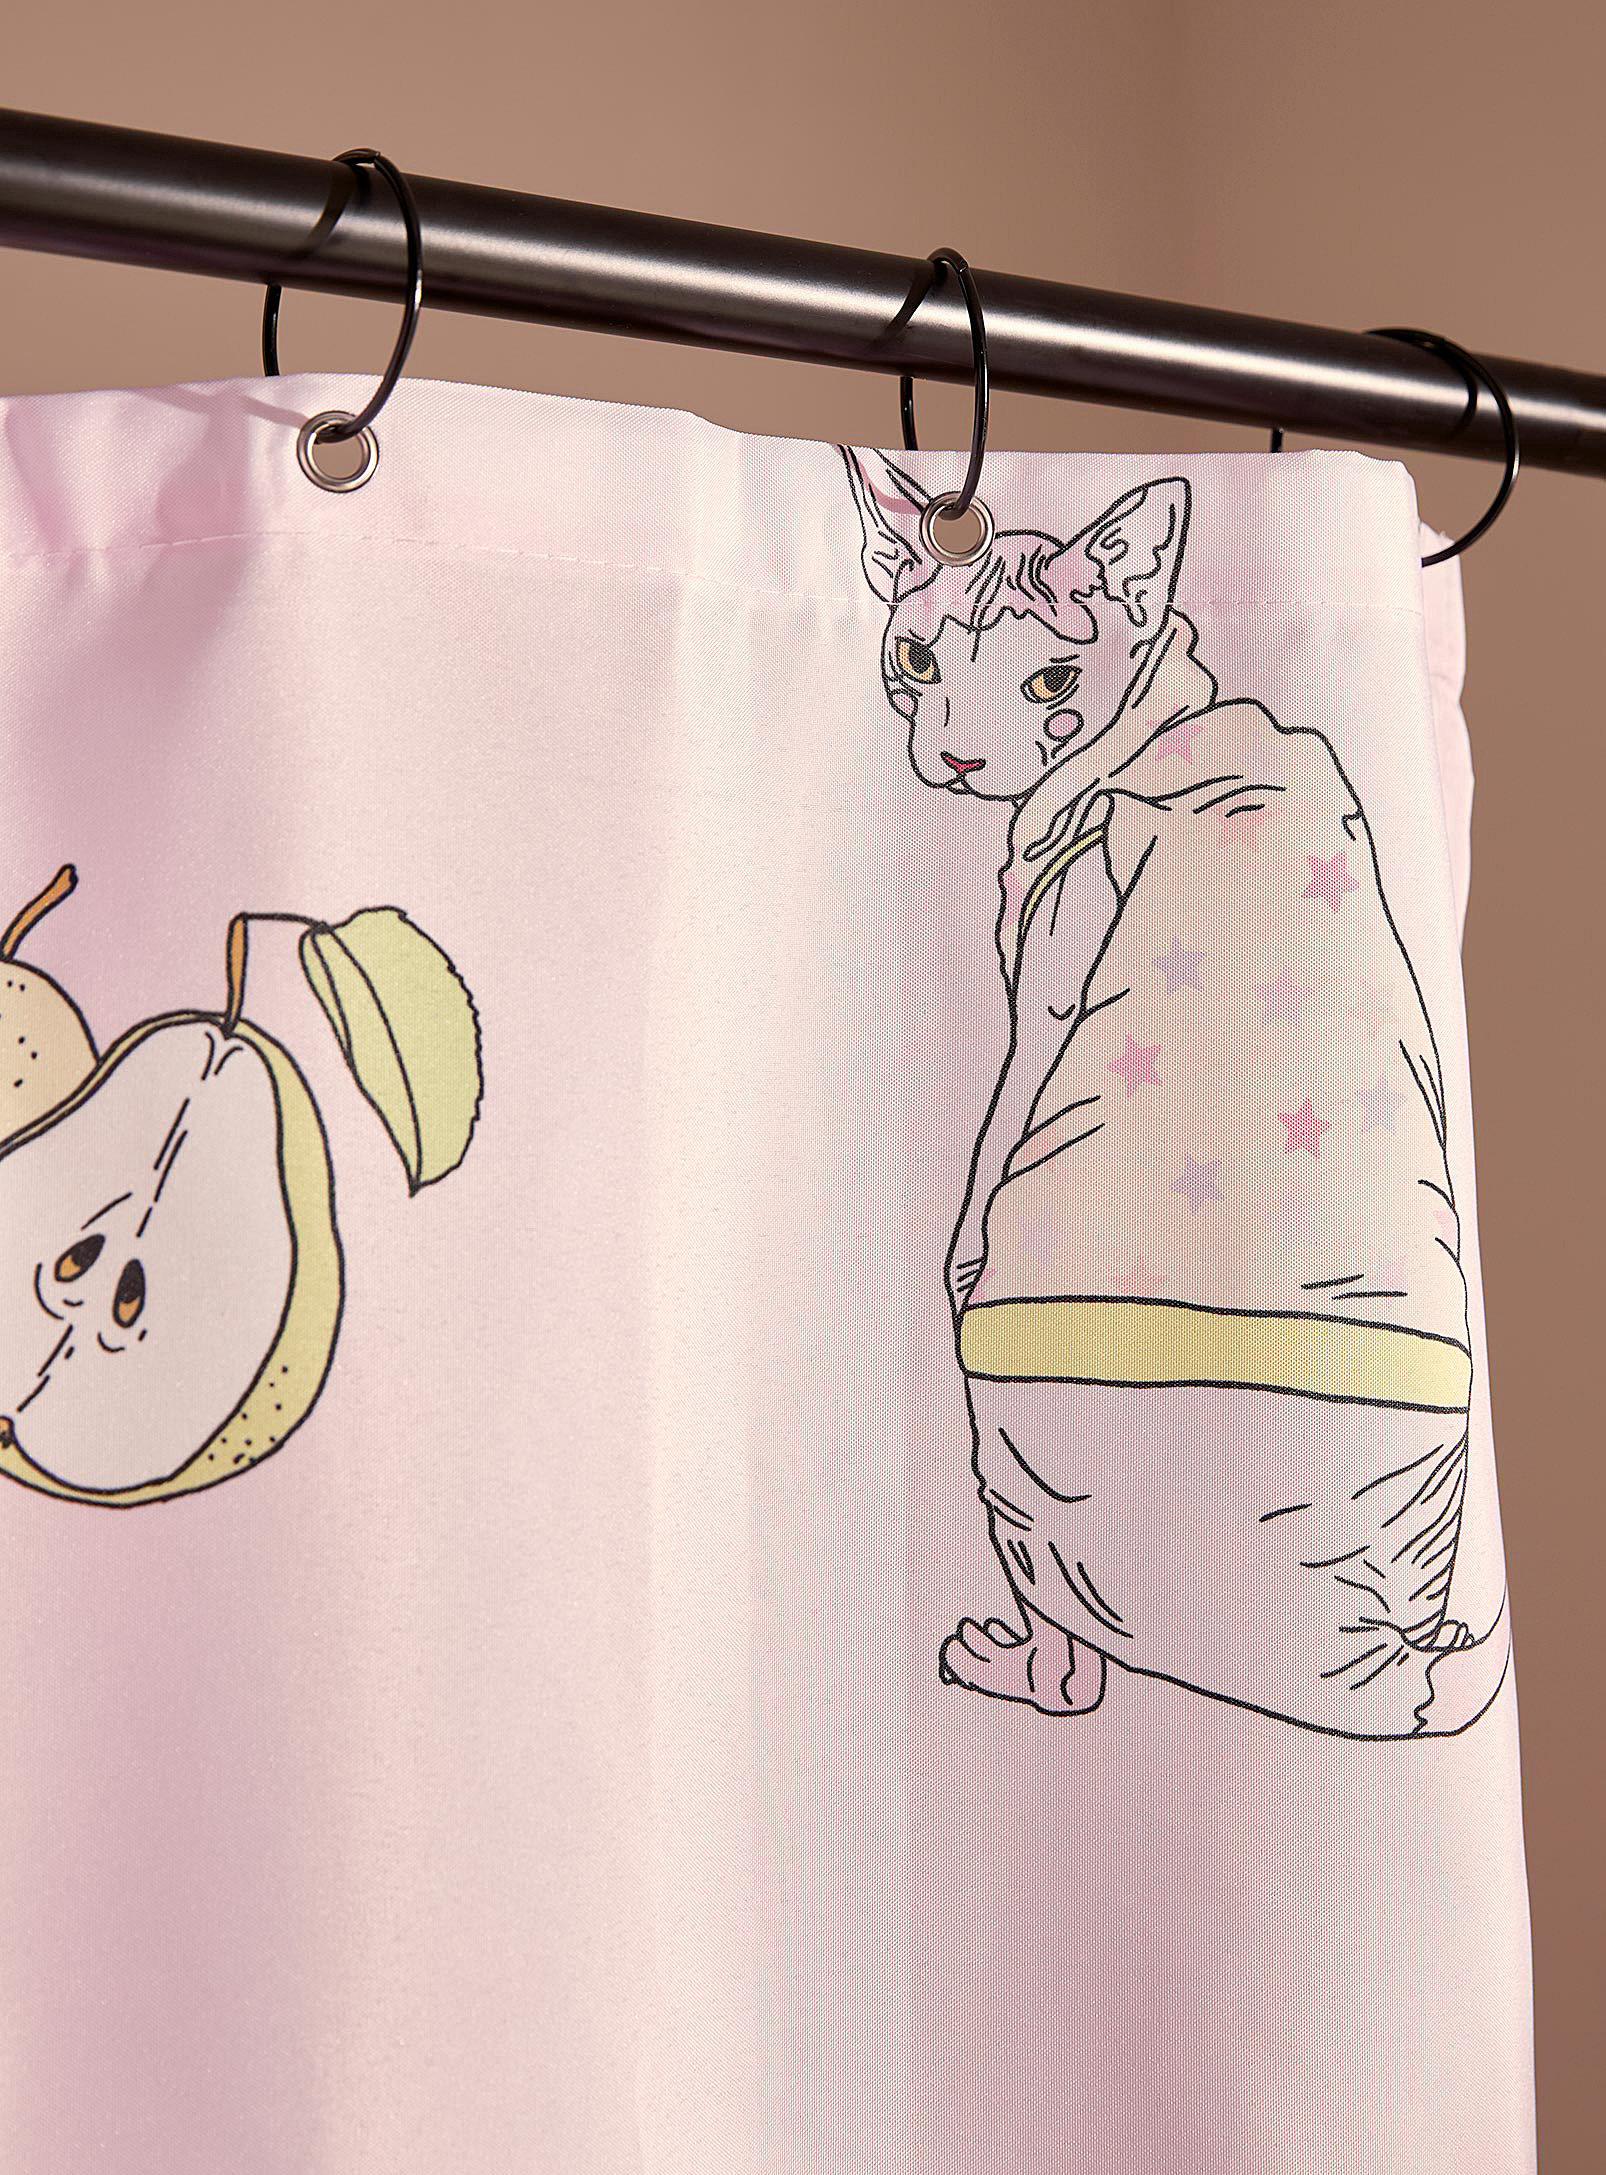 Costume de bain - Le rideau de douche Cats in clothes En collaboration avec l'artiste Lovestruck Prints